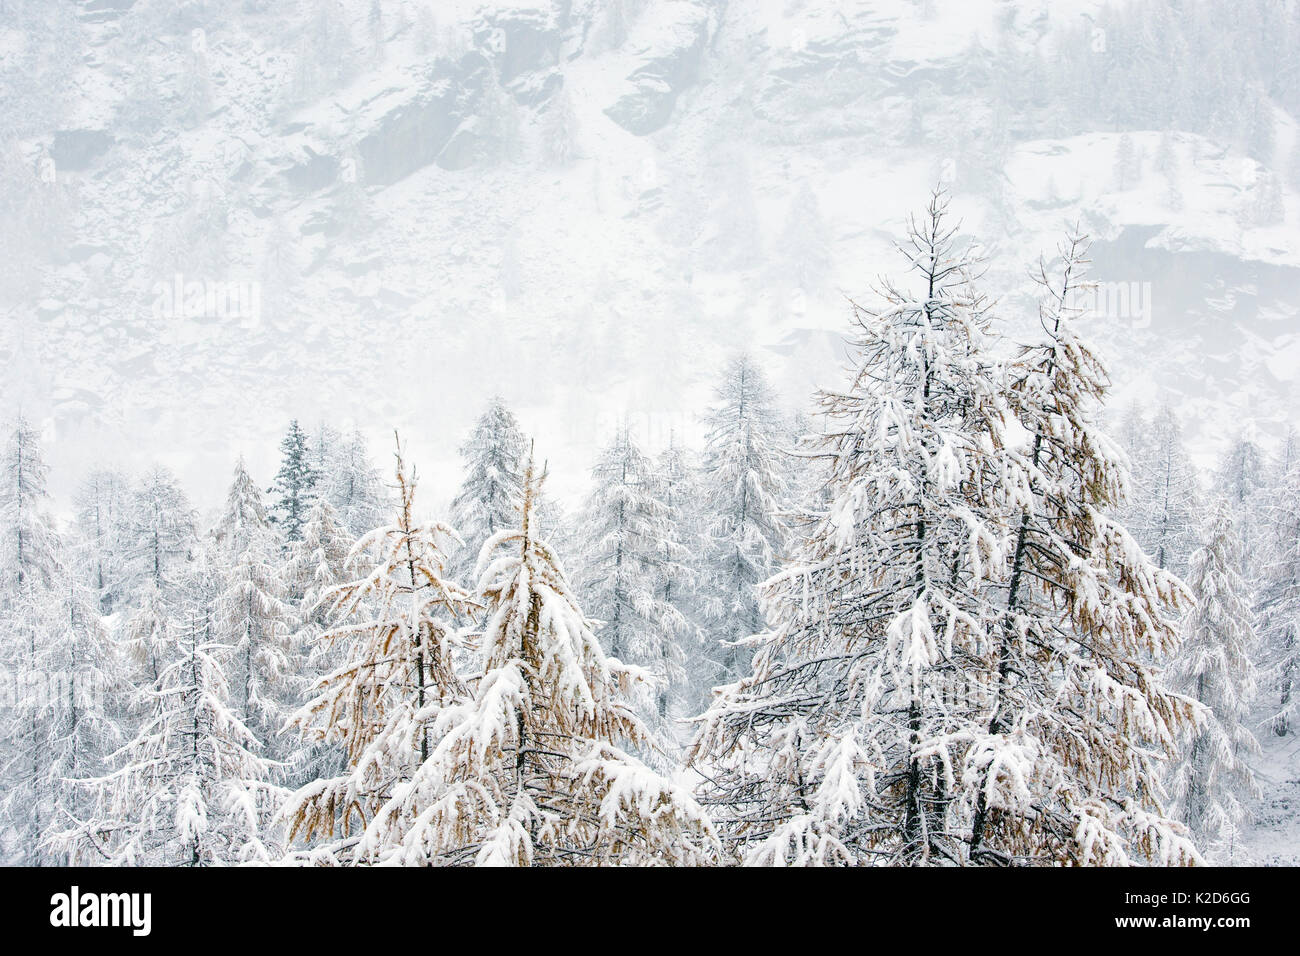 Wald auf dem Berg Seiten im Schnee an einem nebligen Tag abgedeckt. Nationalpark Gran Paradiso, Italien, November. Stockfoto